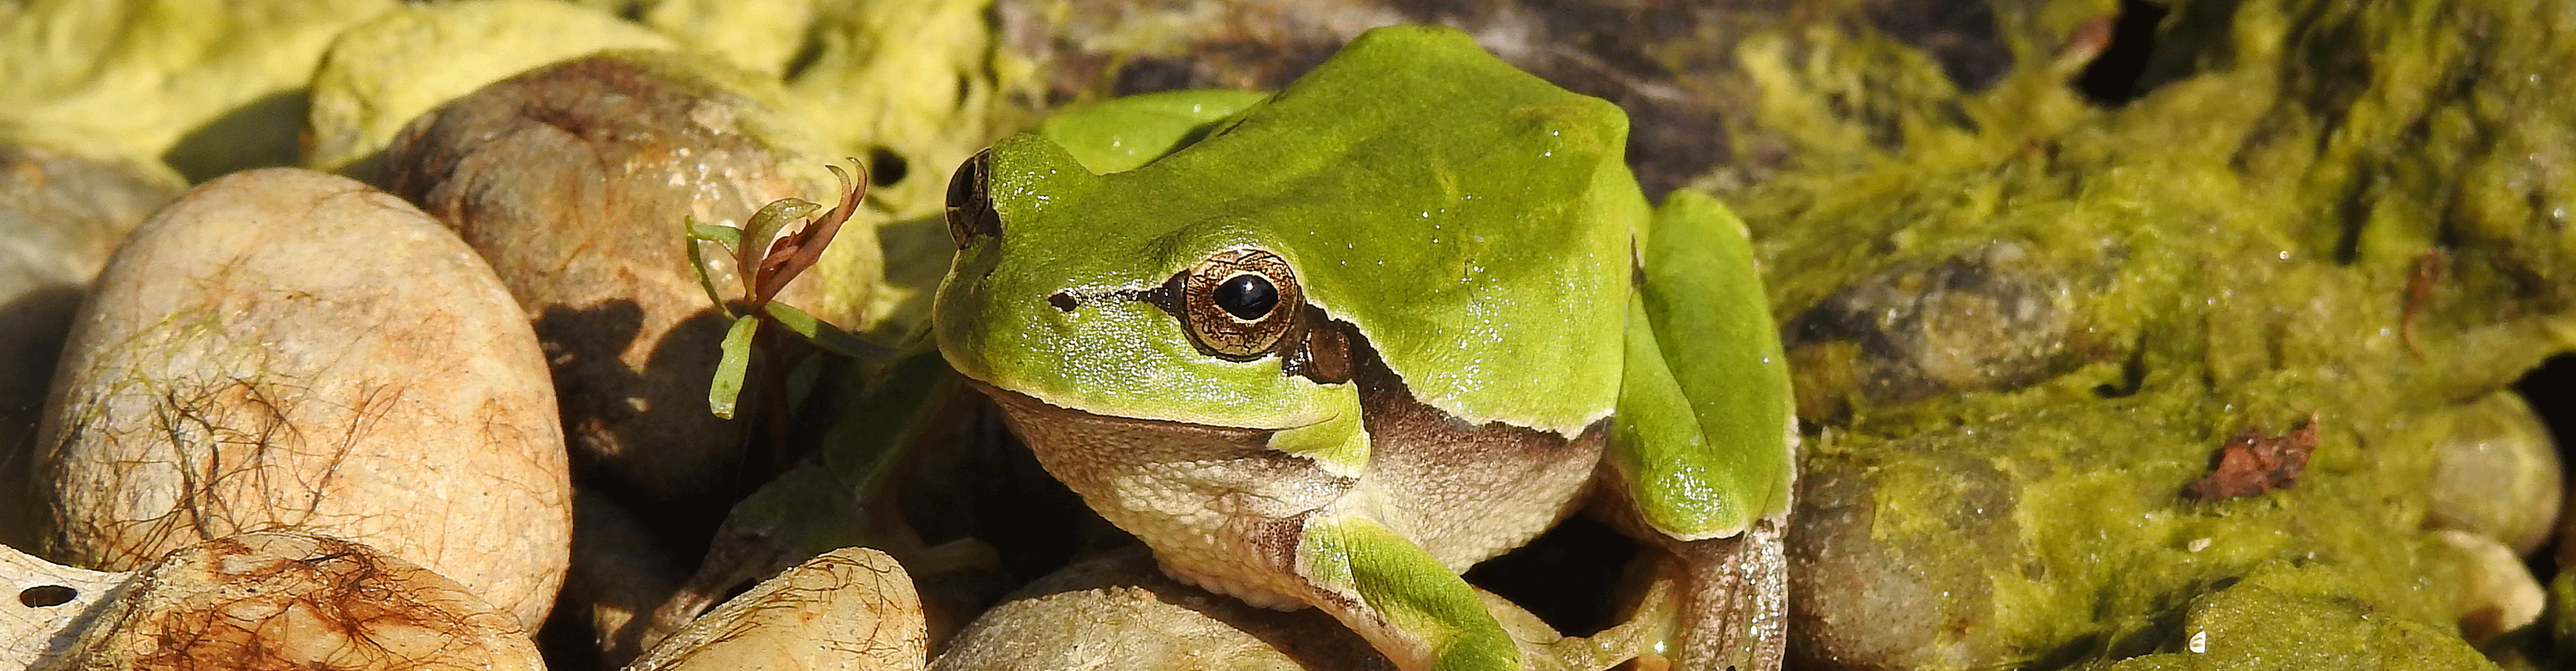 Grüner Frosch im Teich: Der Streit zwischen Volta und Galvani nahm seinen Ursprung mit einem kleinen Tier.  (© VERBUND)